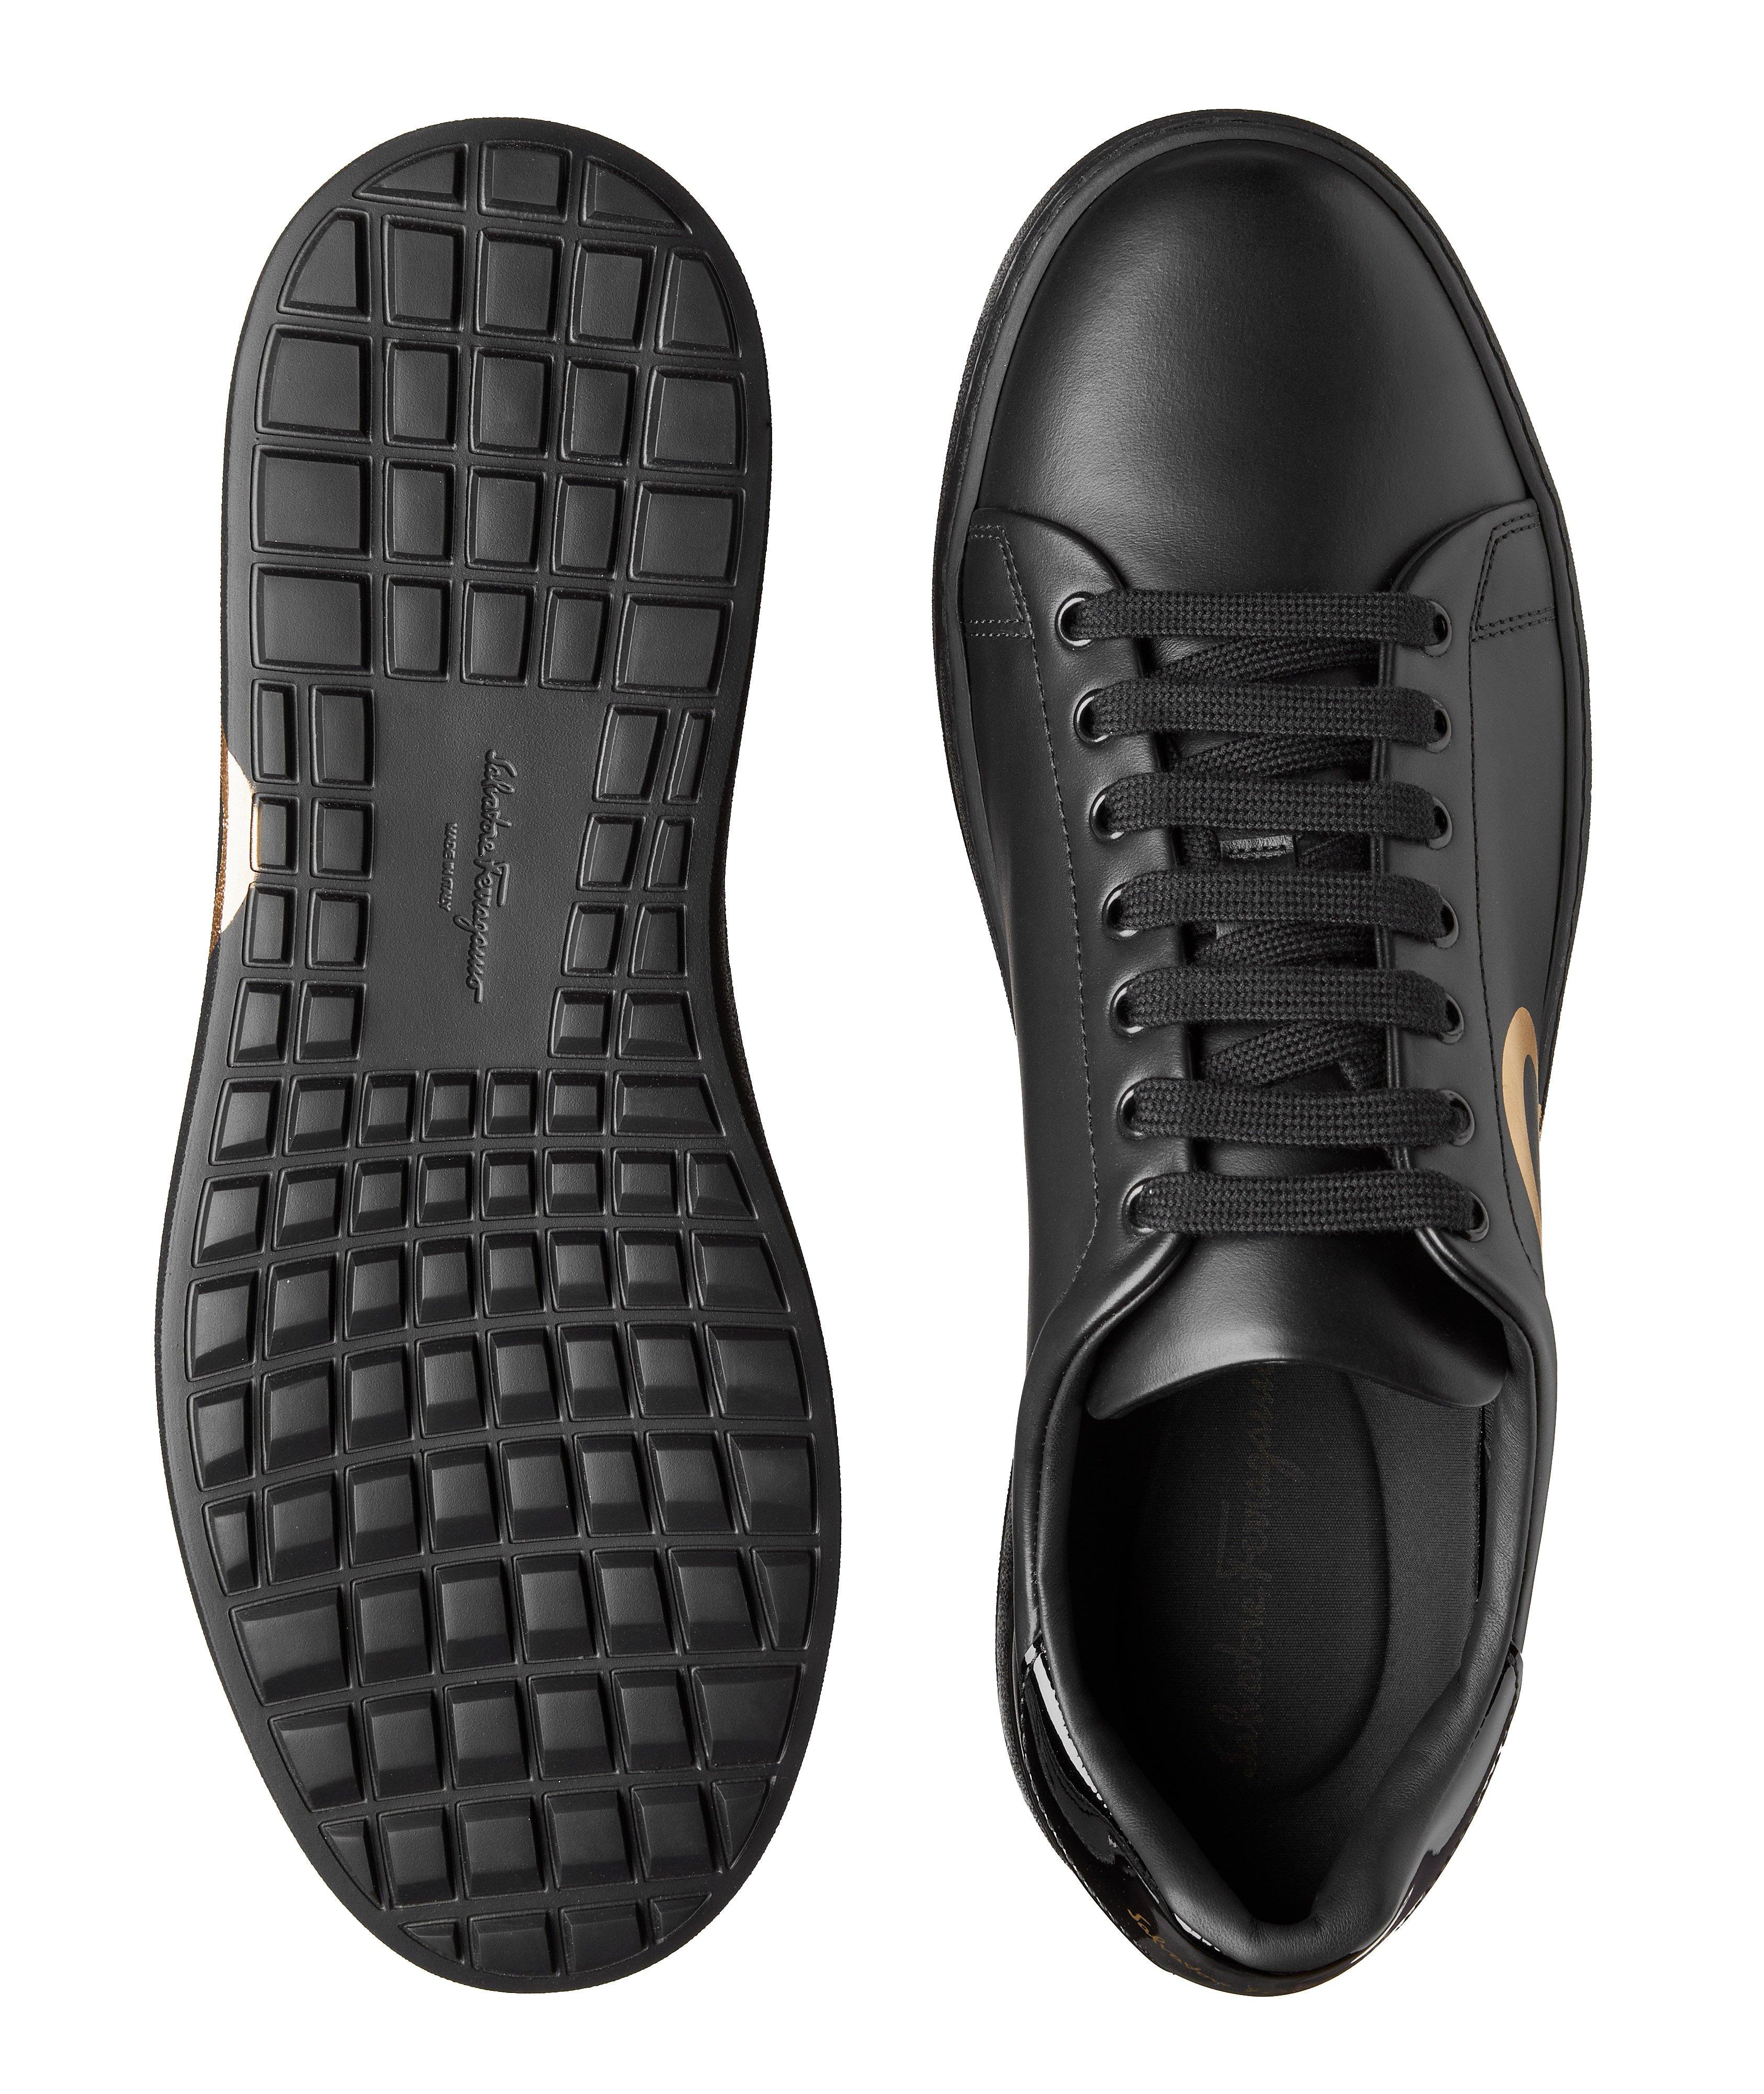 Chaussure sport en cuir image 2